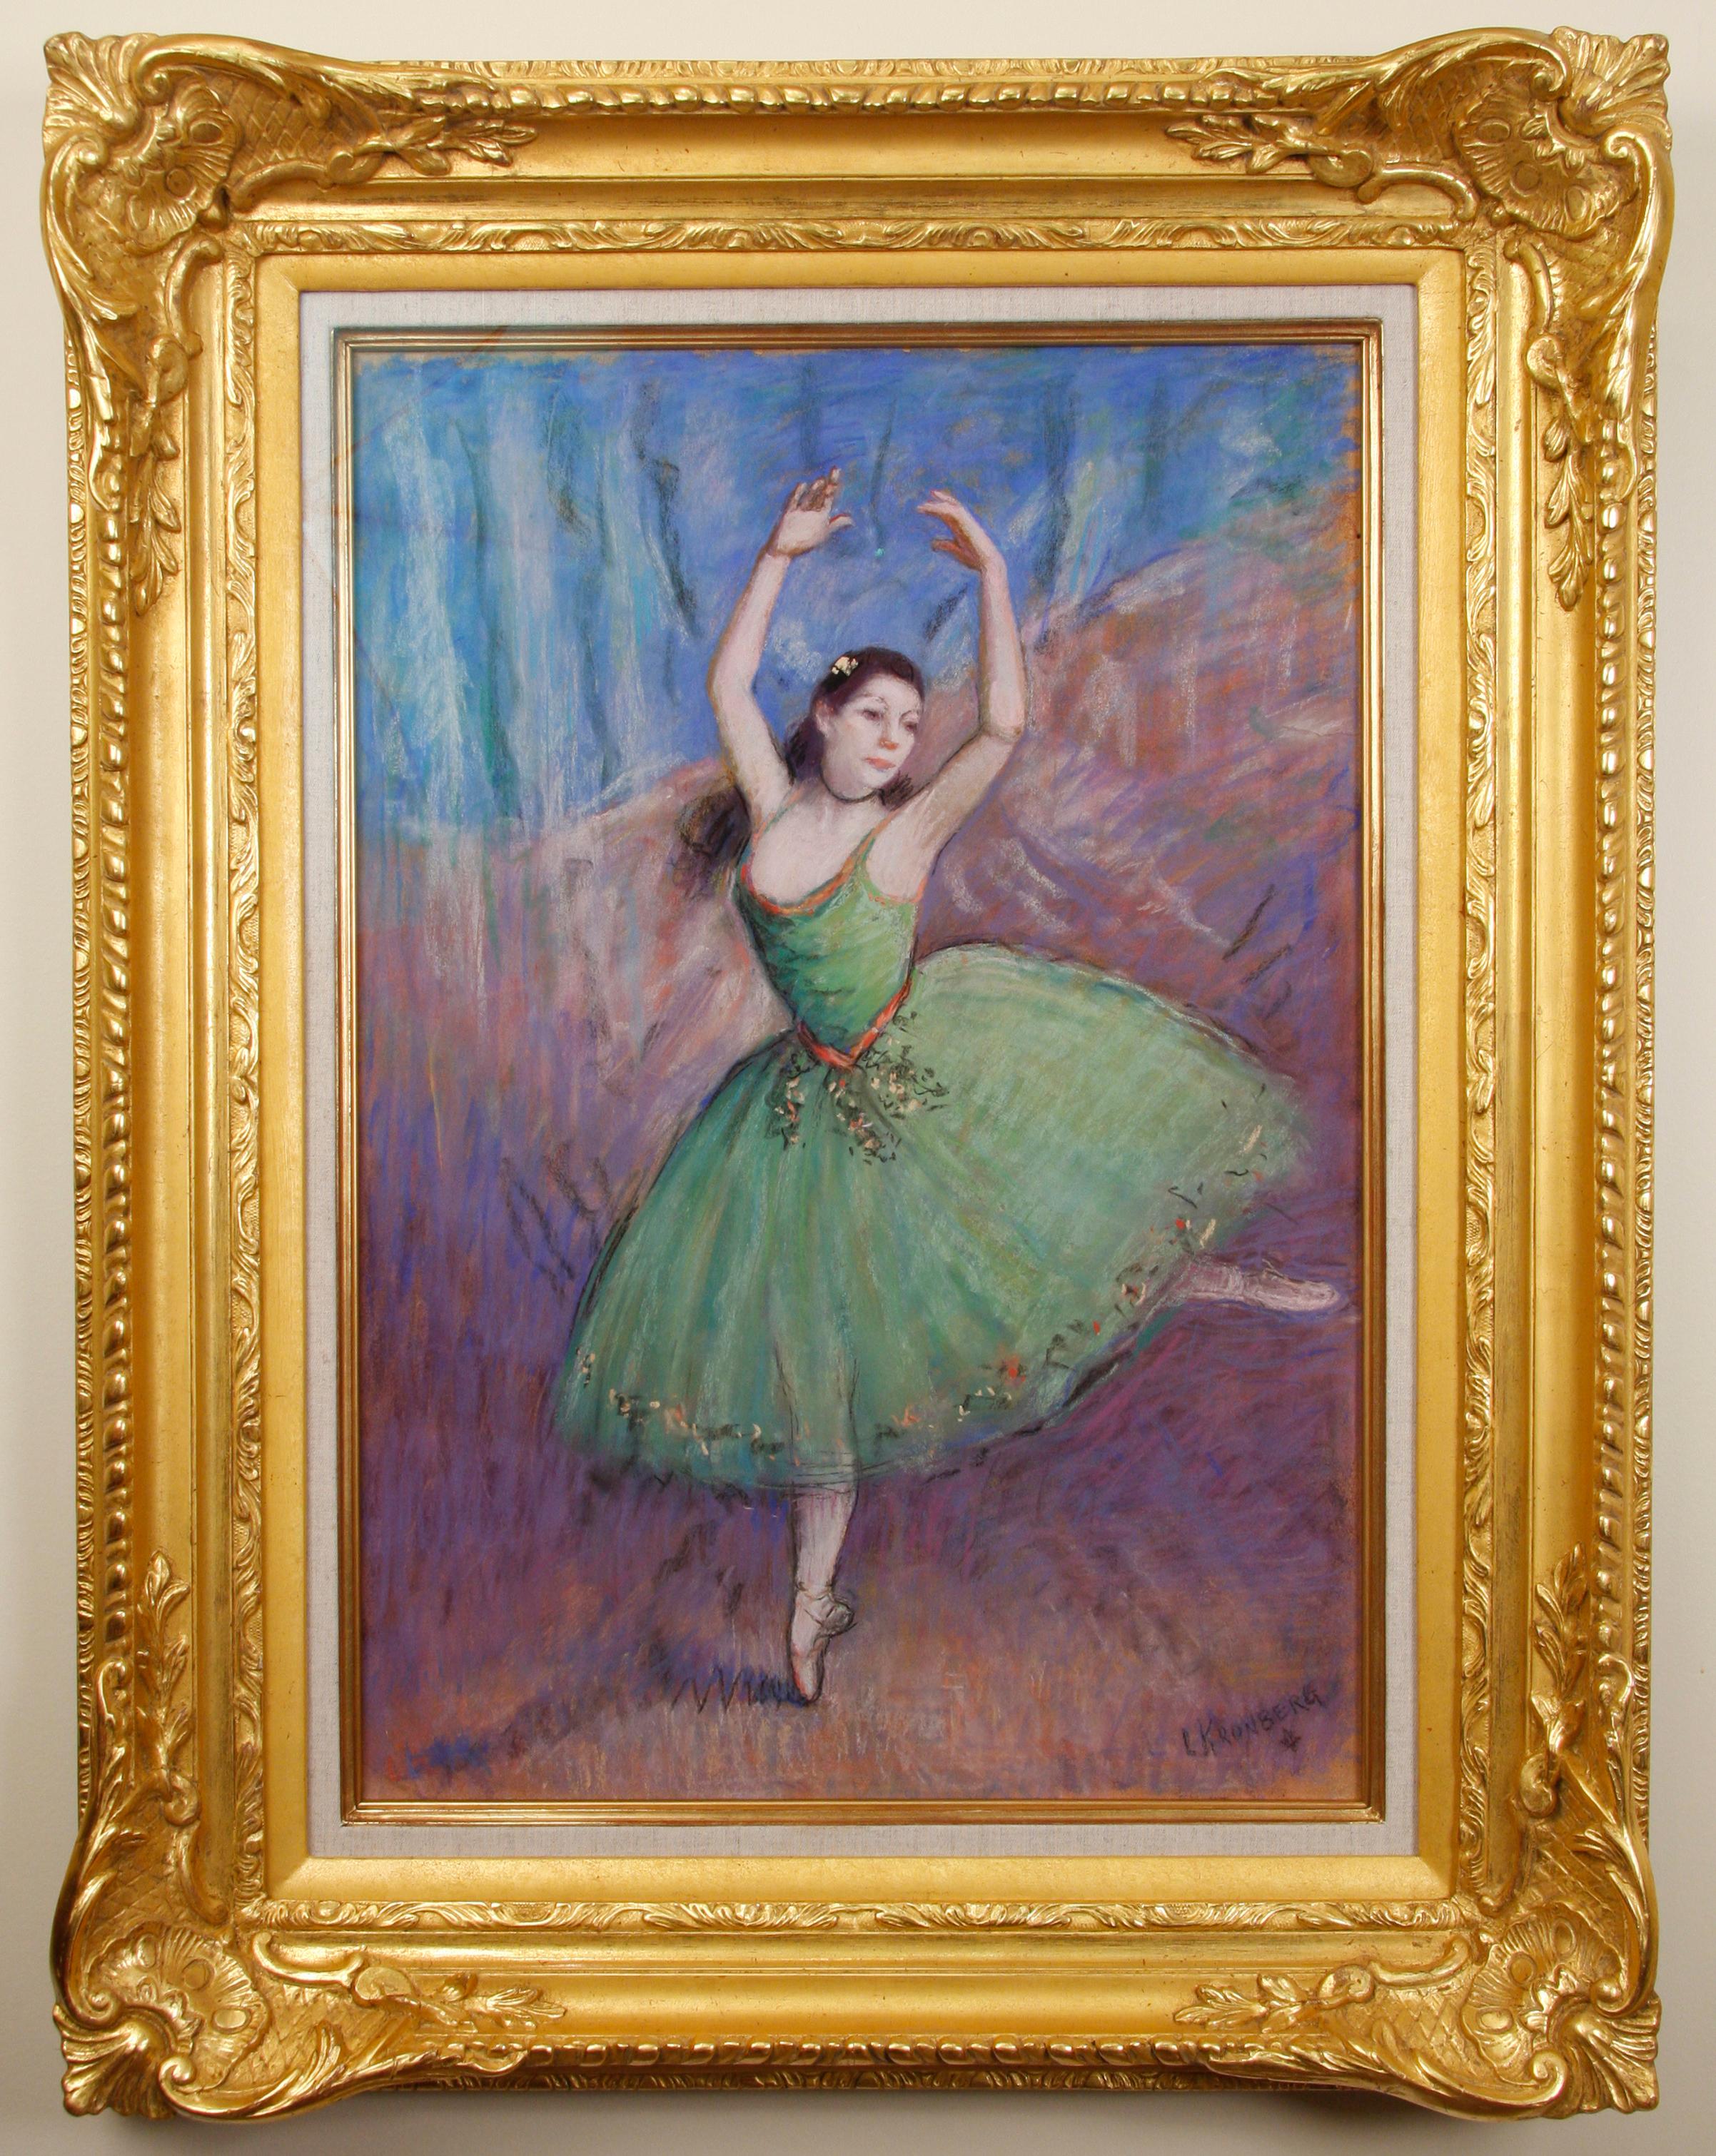 Louis Kronberg Figurative Art - Impressionist Ballerina Pastel on Canvas, "Dancer in Green"